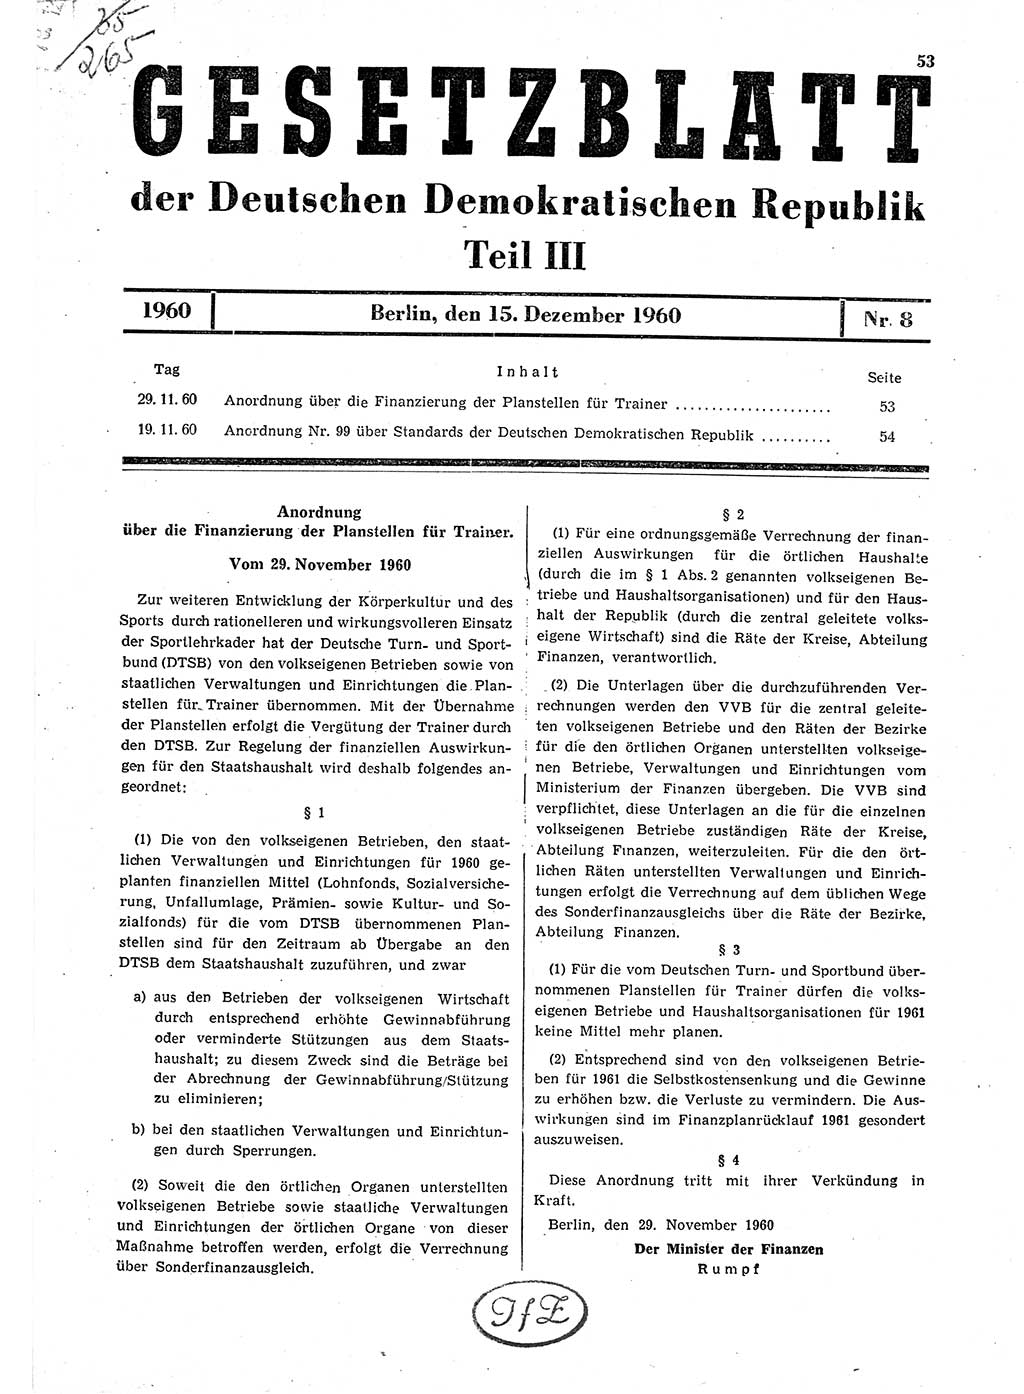 Gesetzblatt (GBl.) der Deutschen Demokratischen Republik (DDR) Teil ⅠⅠⅠ 1960, Seite 53 (GBl. DDR ⅠⅠⅠ 1960, S. 53)